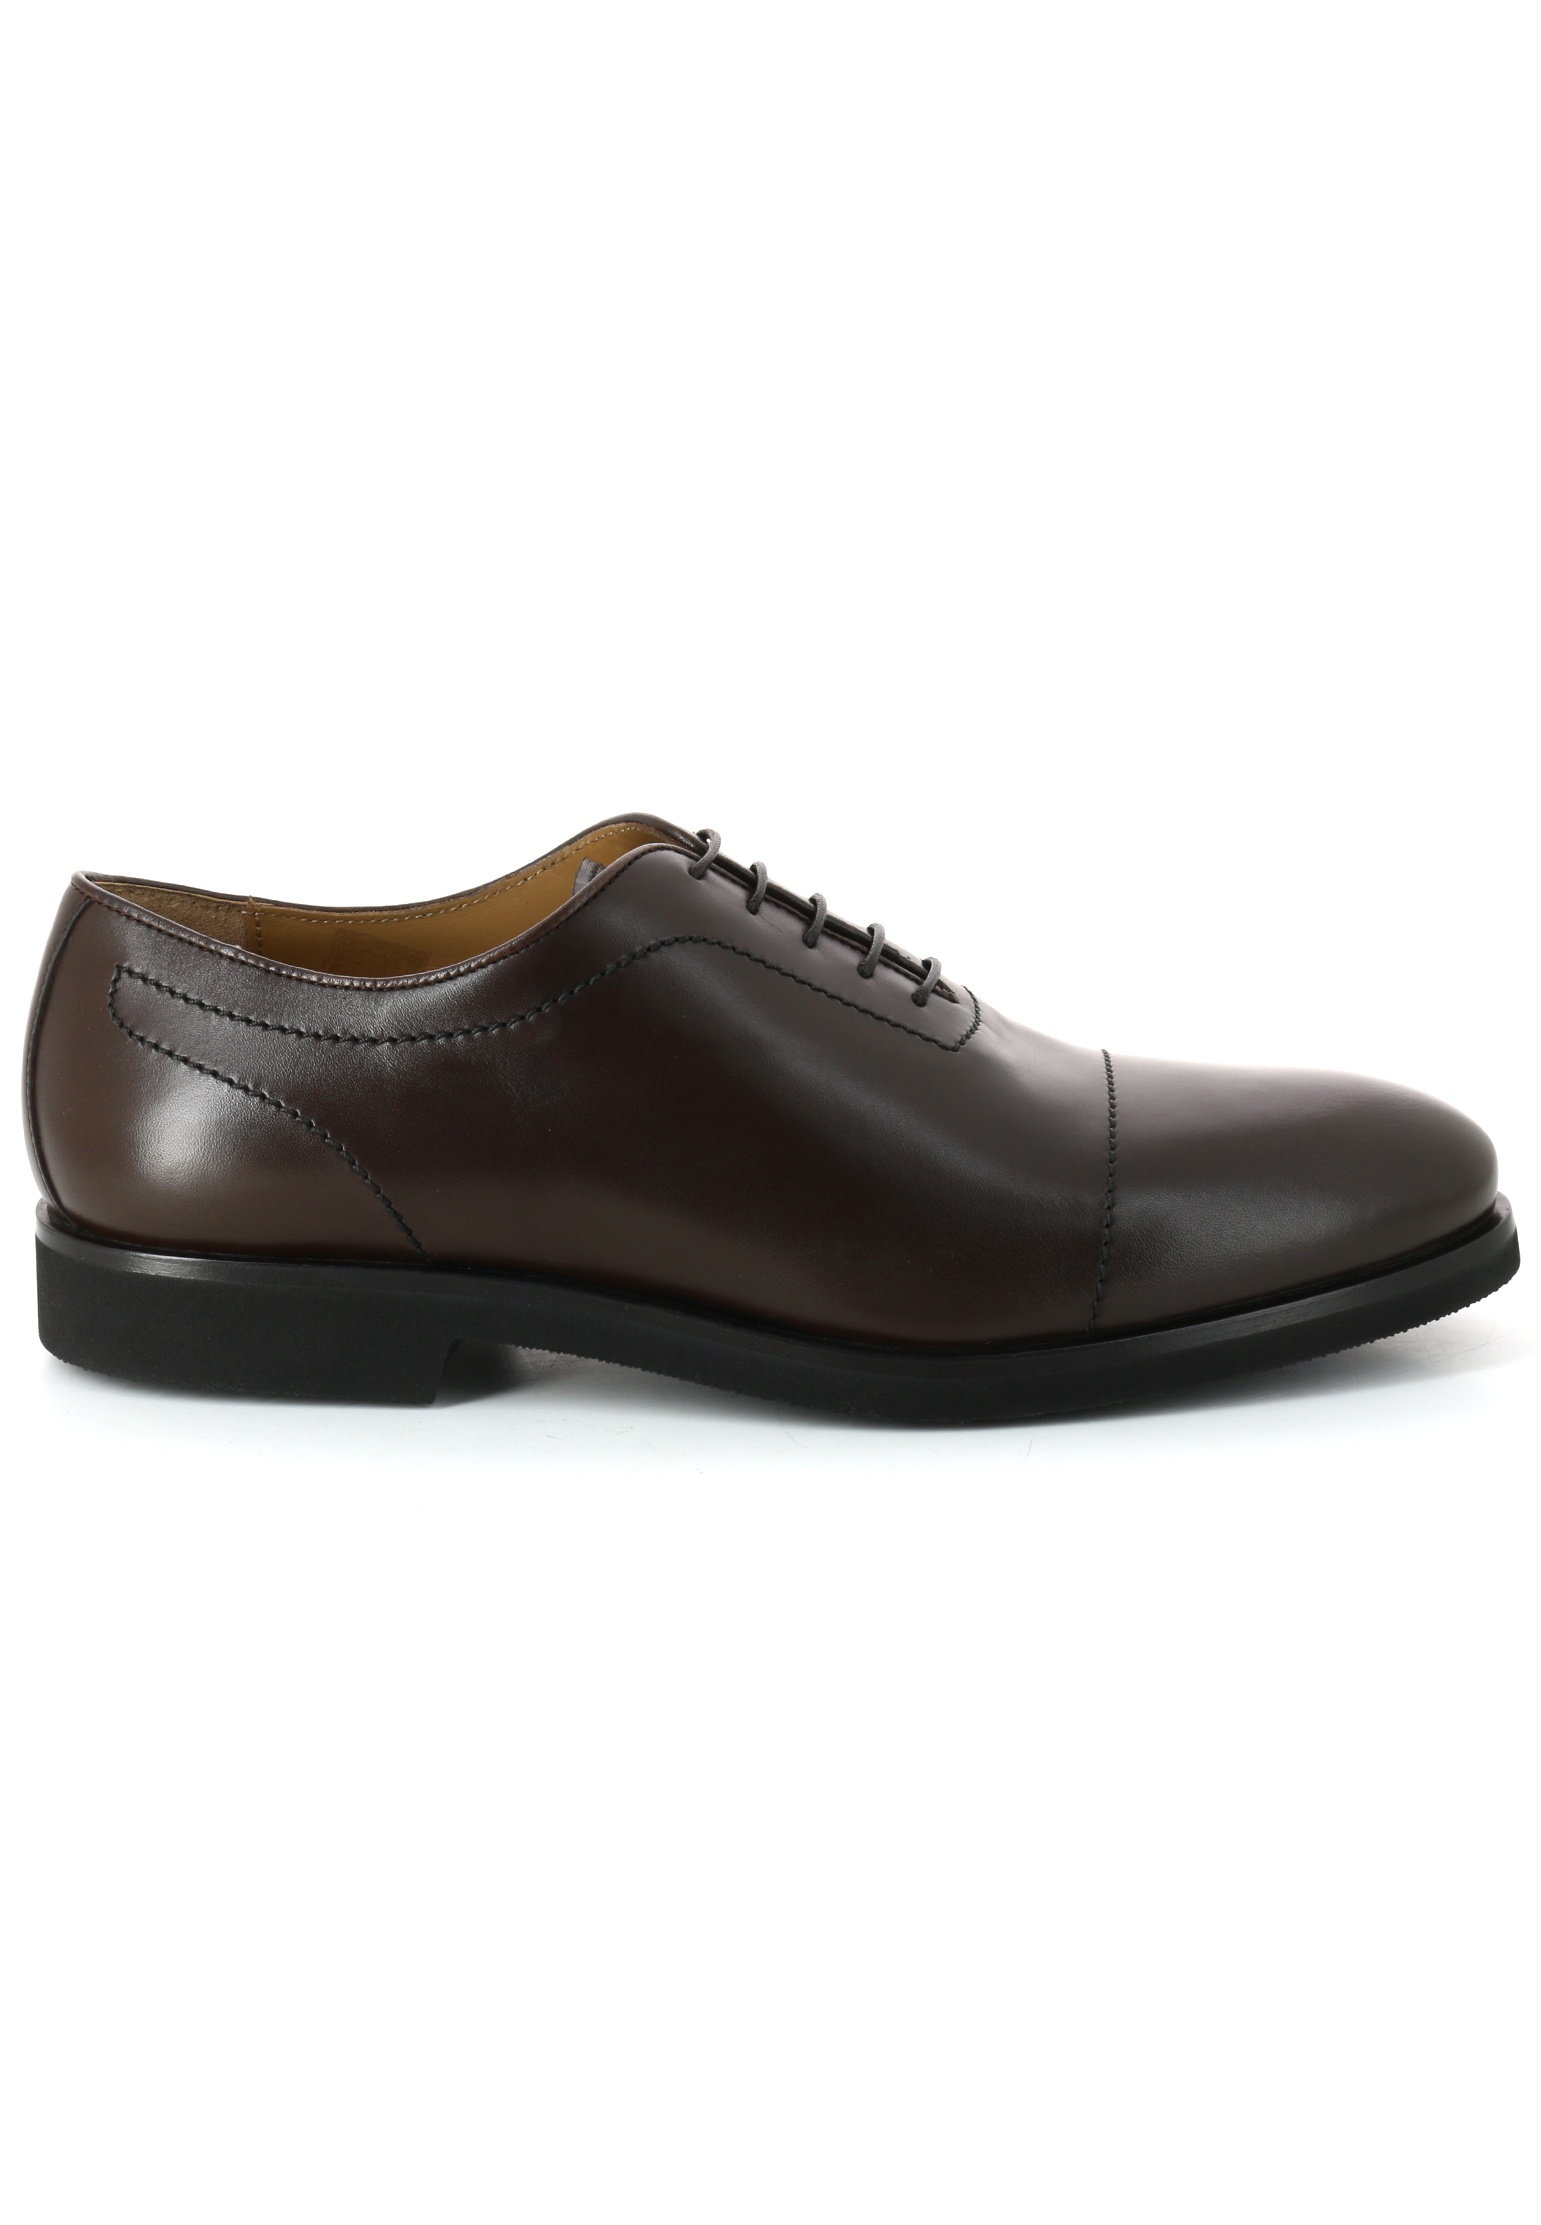 Туфли мужские CASTELLO D'ORO 138047 коричневые 42 EU